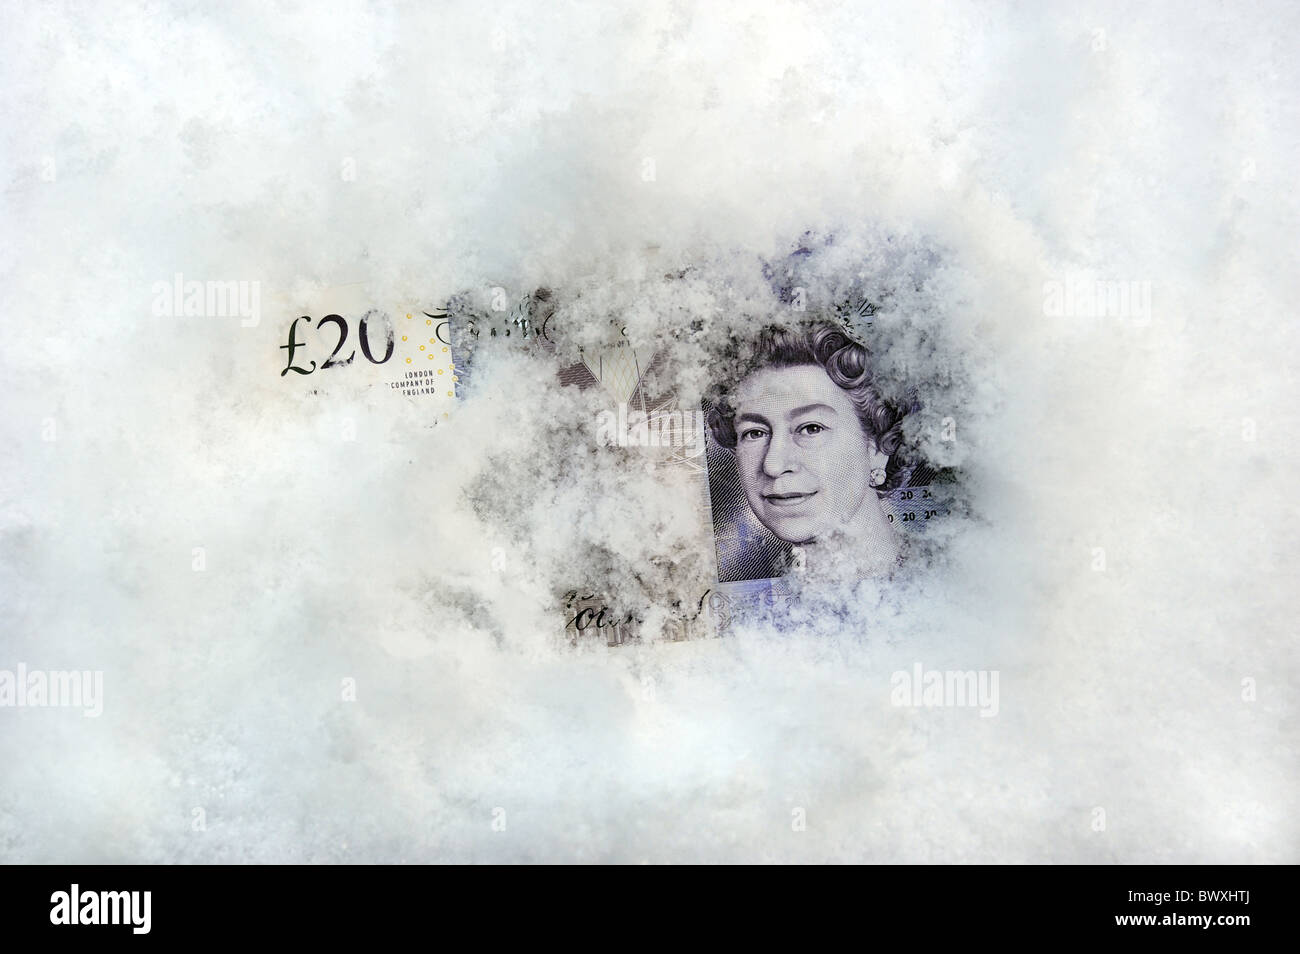 Nota 20 libras británicas en la nieve y el hielo invernal de combustible RE PAGOS AHORRO DE DINERO EN EFECTIVO LAS INVERSIONES HIPOTECAS ETC Foto de stock